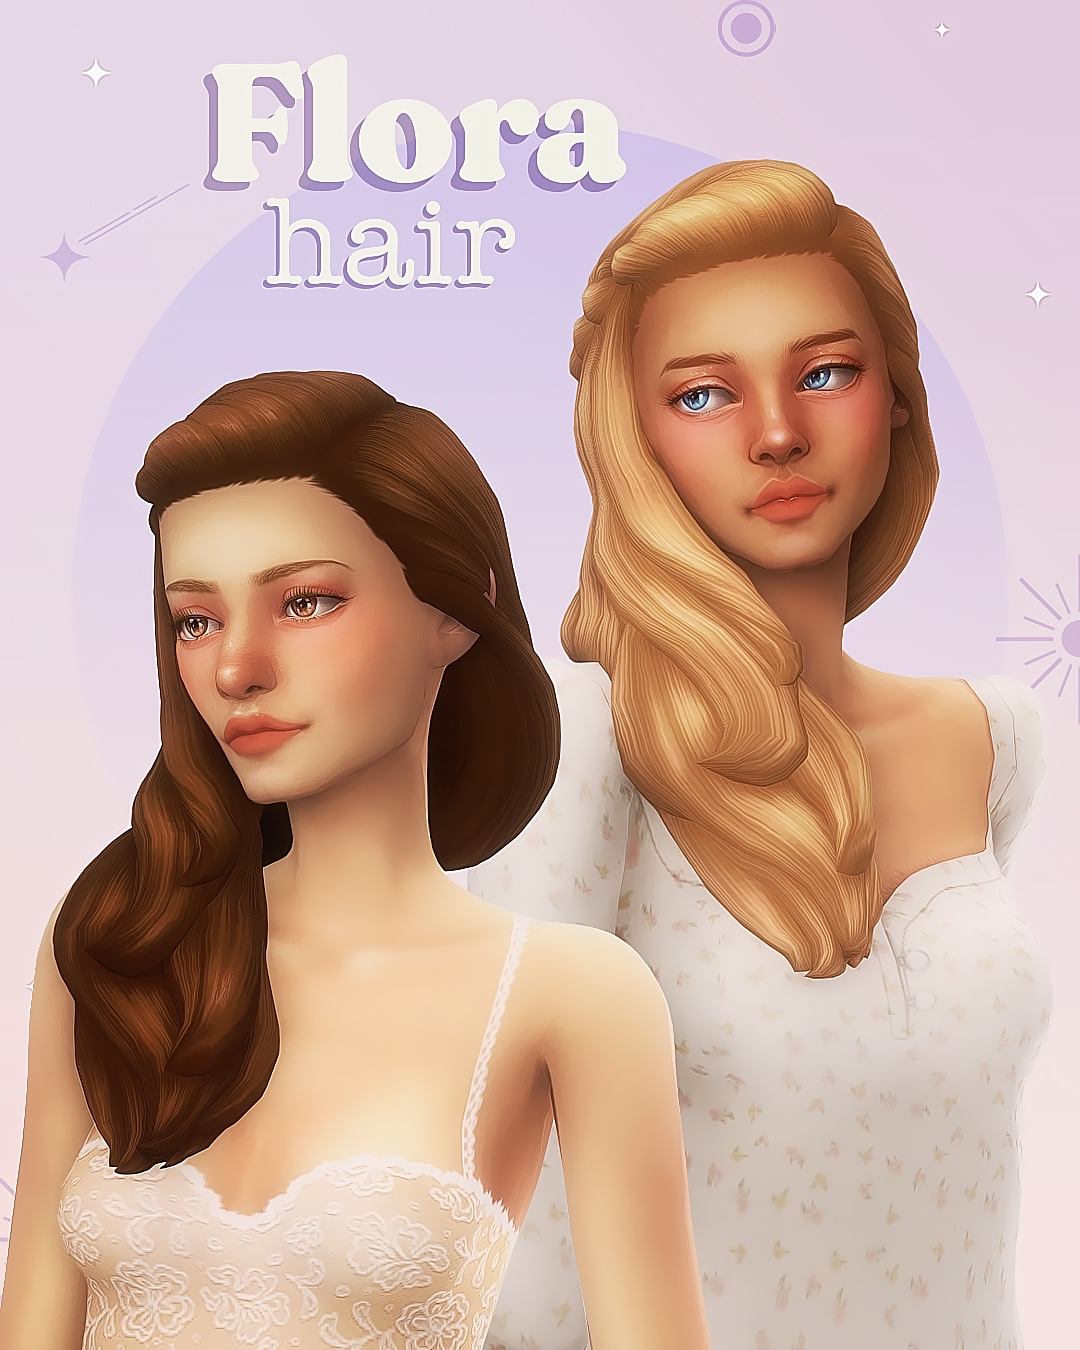 Shampoo Fairy Hair - The Sims 4 Create a Sim - CurseForge